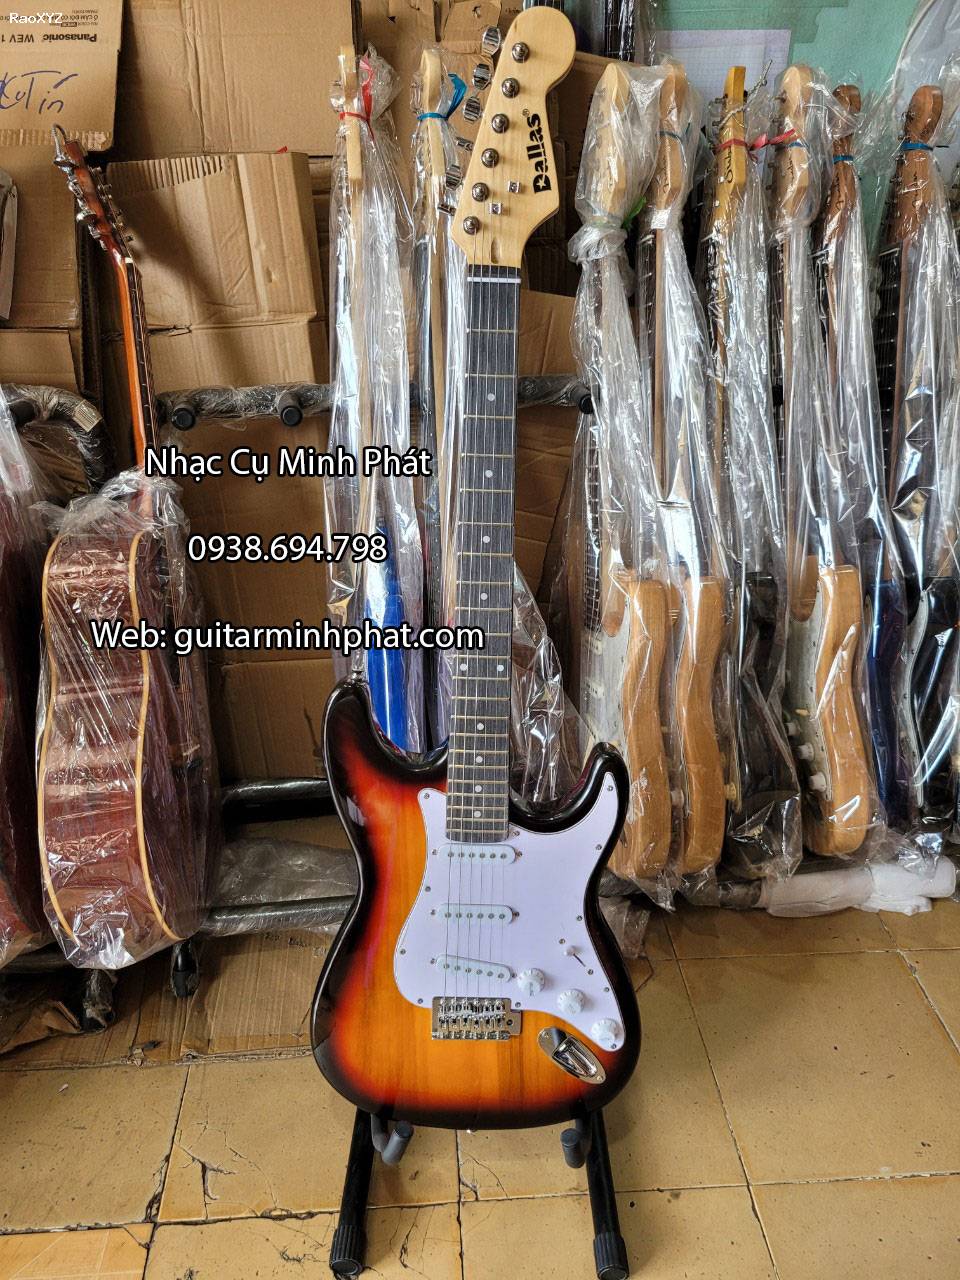 Bán đàn guitar điện giá rẻ chất lượng tại Guitar Minh Phát quận Bình Tân